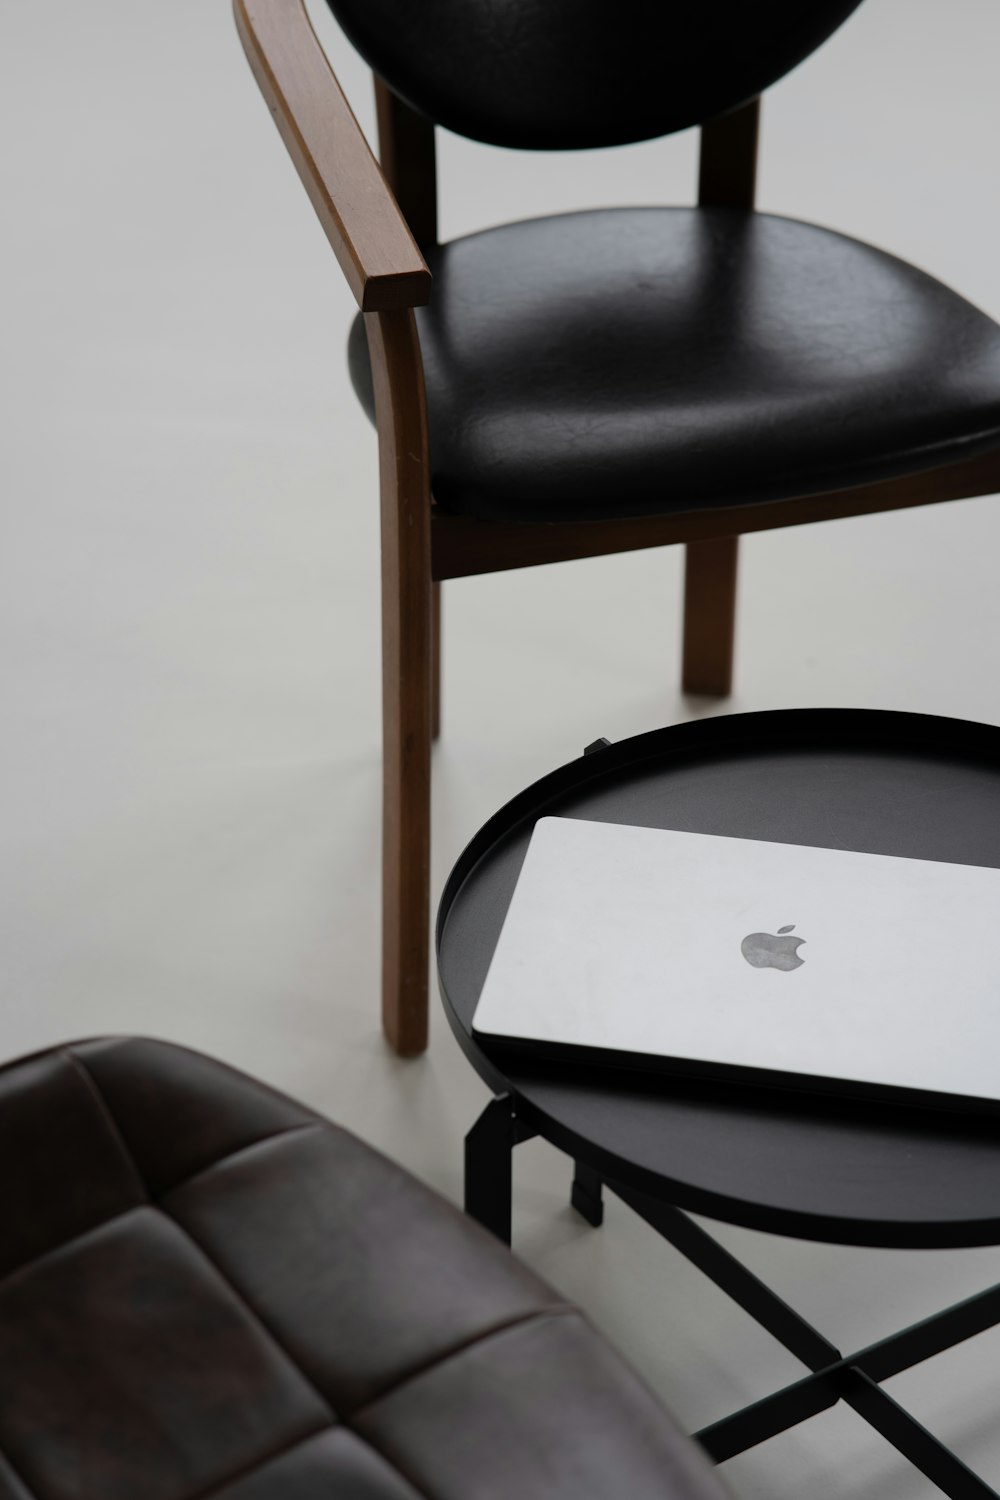 Un laptop Apple seduto su un tavolo accanto a una sedia